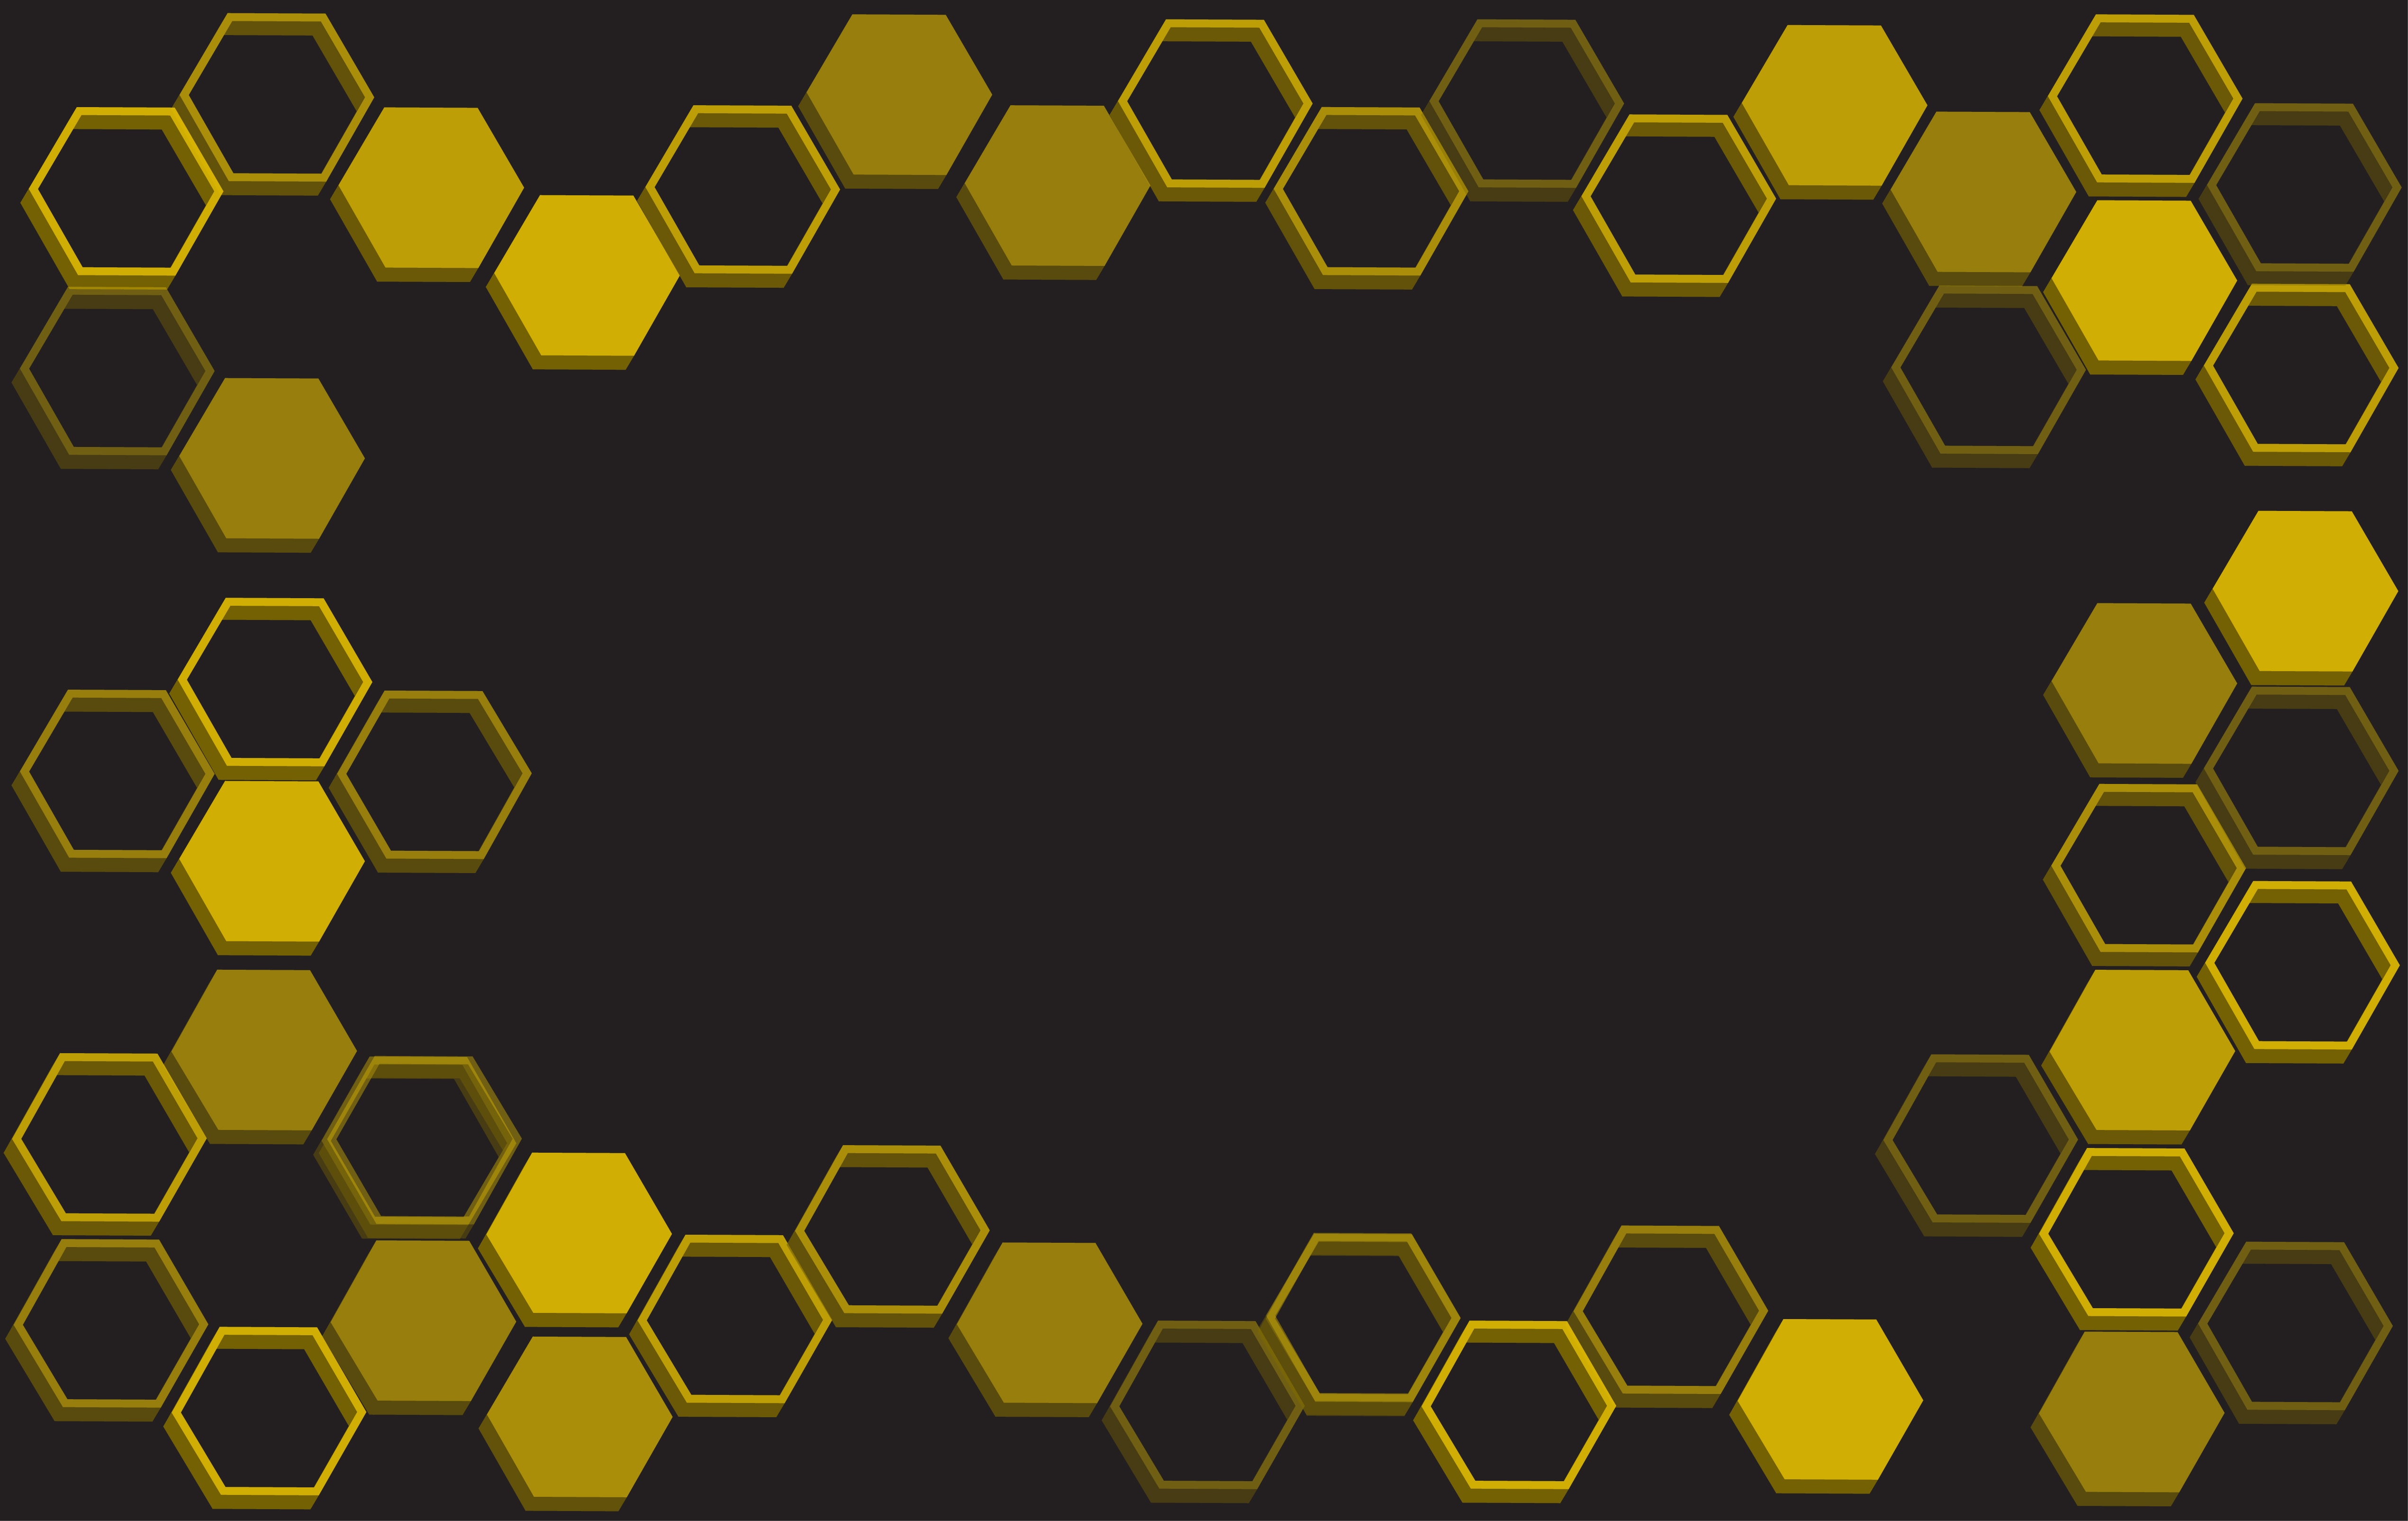 Download bee hive background vector 532281 - Download Free Vectors, Clipart Graphics & Vector Art